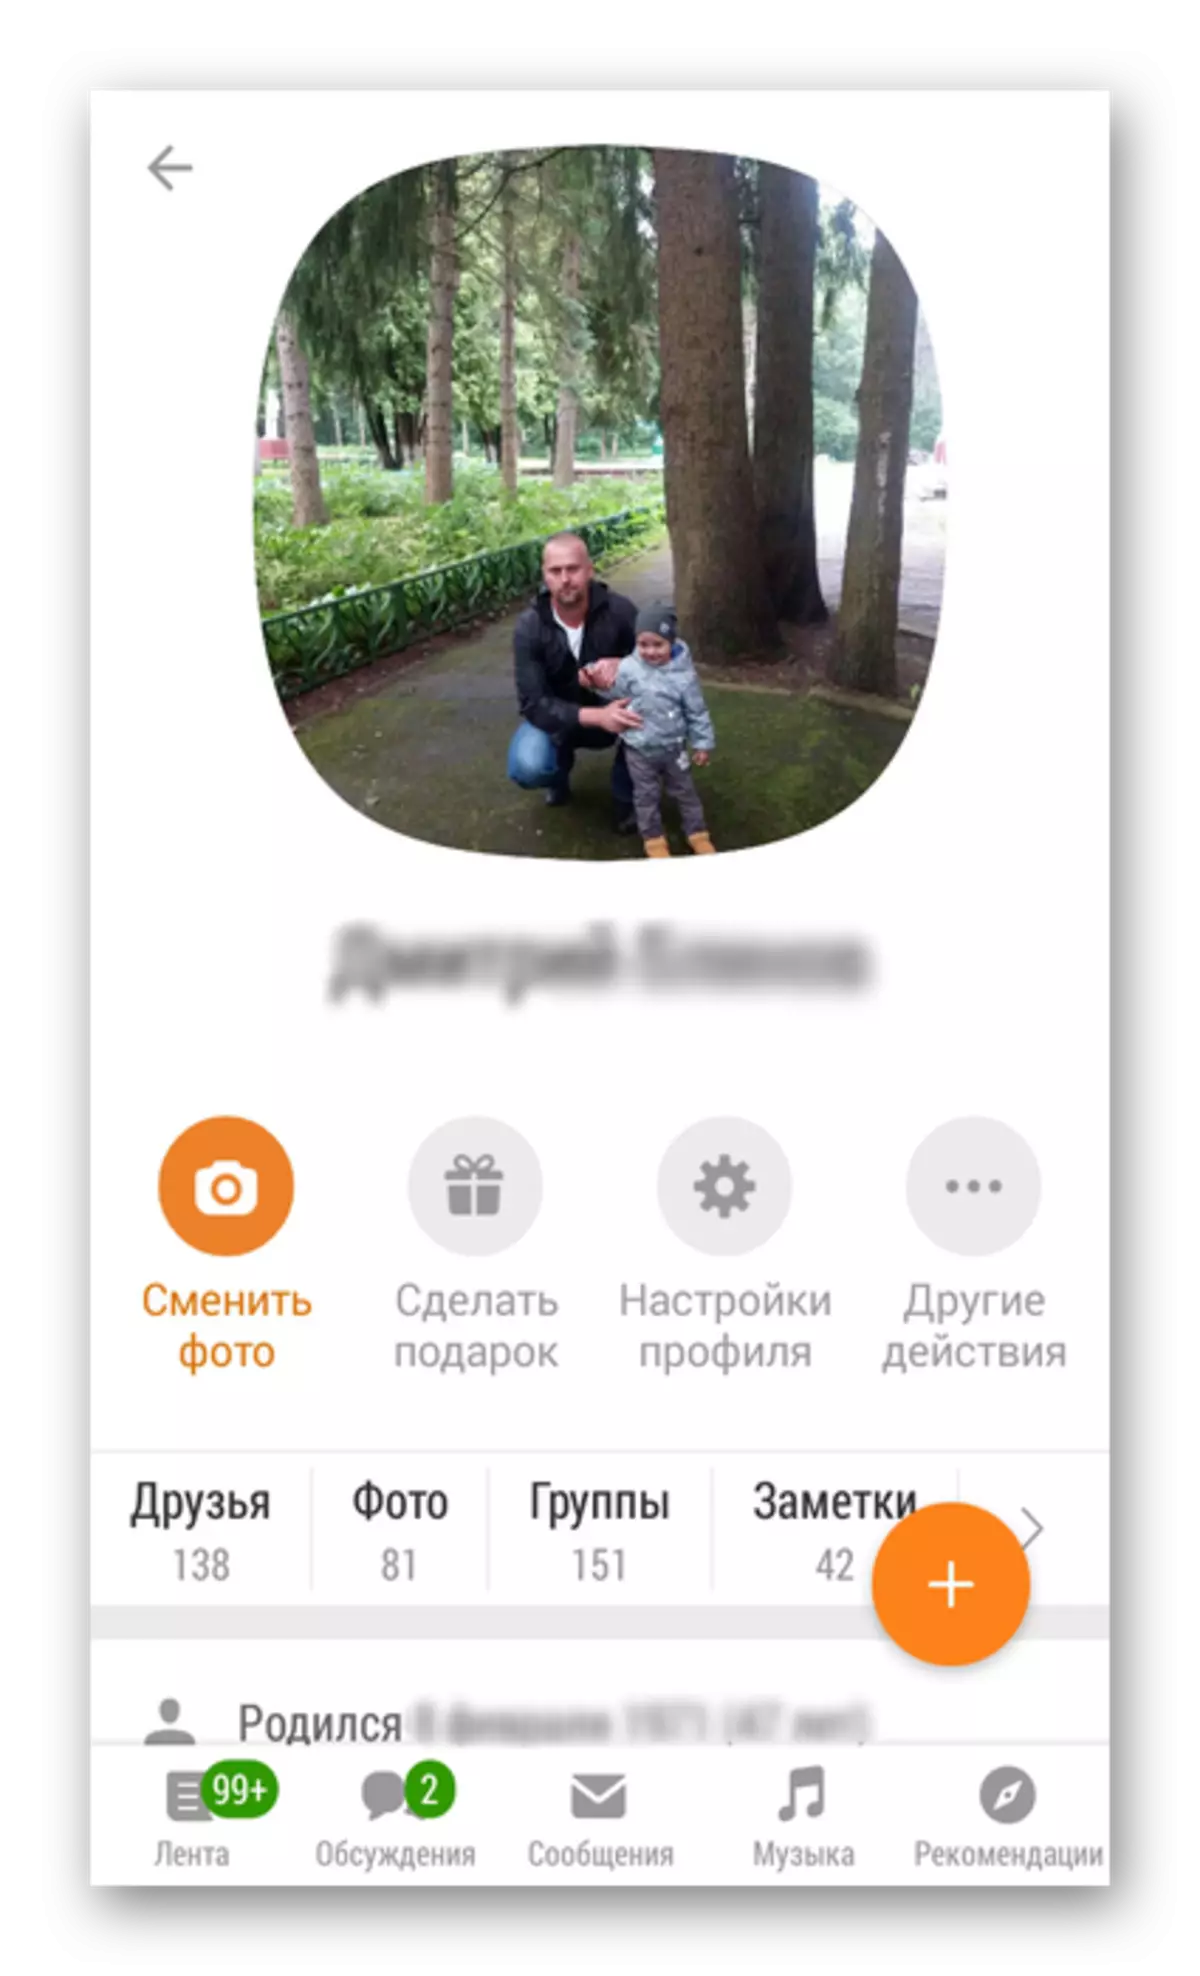 Profil Deschis în aplicația Odnoklassniki